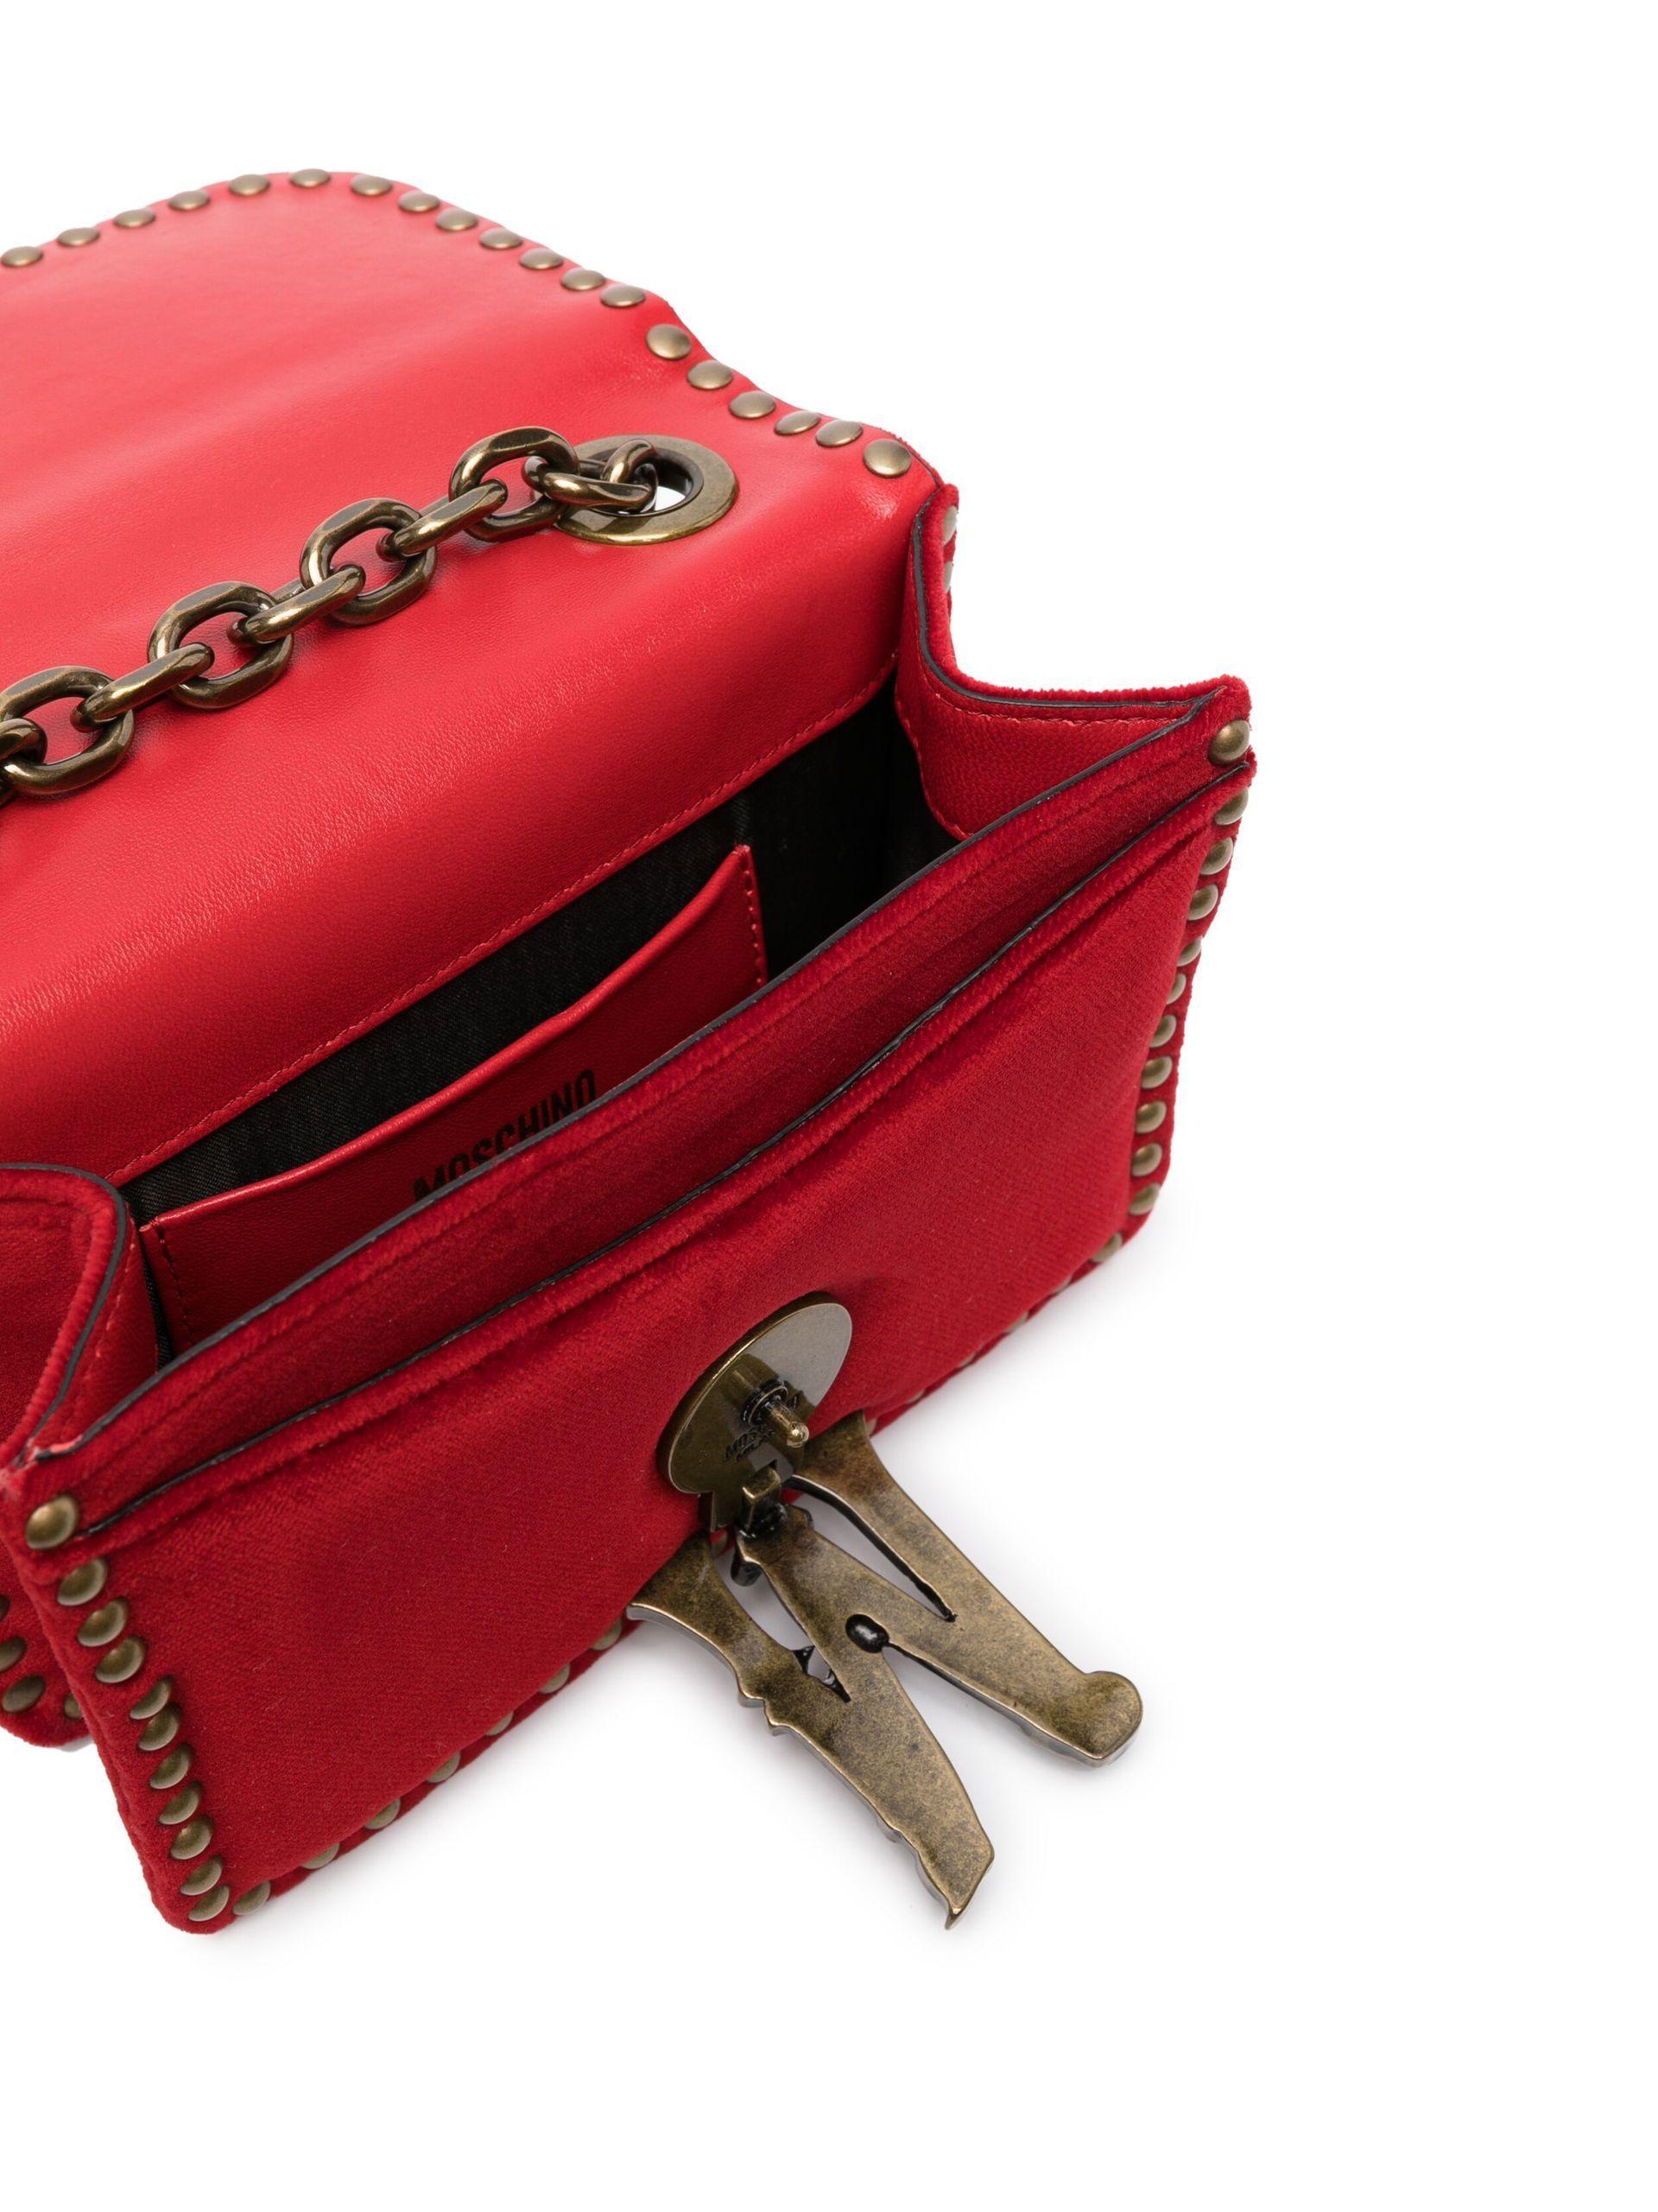 Moschino Velvet Studded Cross Body Bag in Red | Lyst